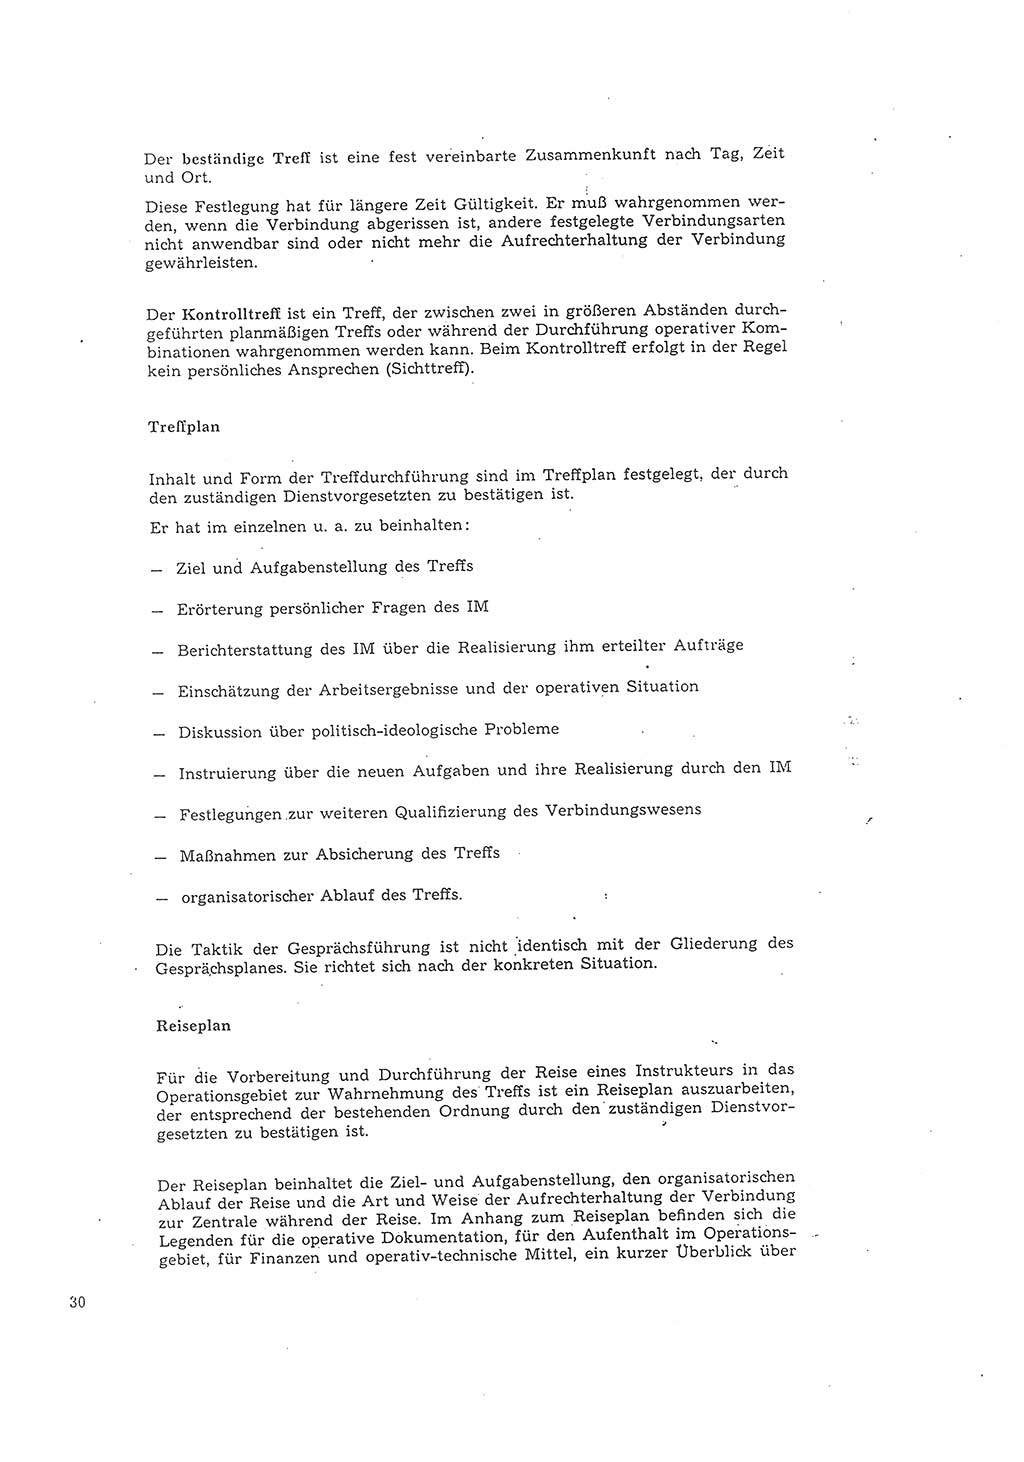 Richtlinie 2/68 für die Arbeit mit Inoffiziellen Mitarbeitern (IM) im Operationsgebiet, Deutsche Demokratische Republik (DDR), Ministerium für Staatssicherheit (MfS), Der Minister (Mielke), Geheime Verschlußsache (GVS) 008-1002/68, Berlin 1968, Seite 30 (RL 2/68 DDR MfS Min. GVS 008-1002/68 1968, S. 30)